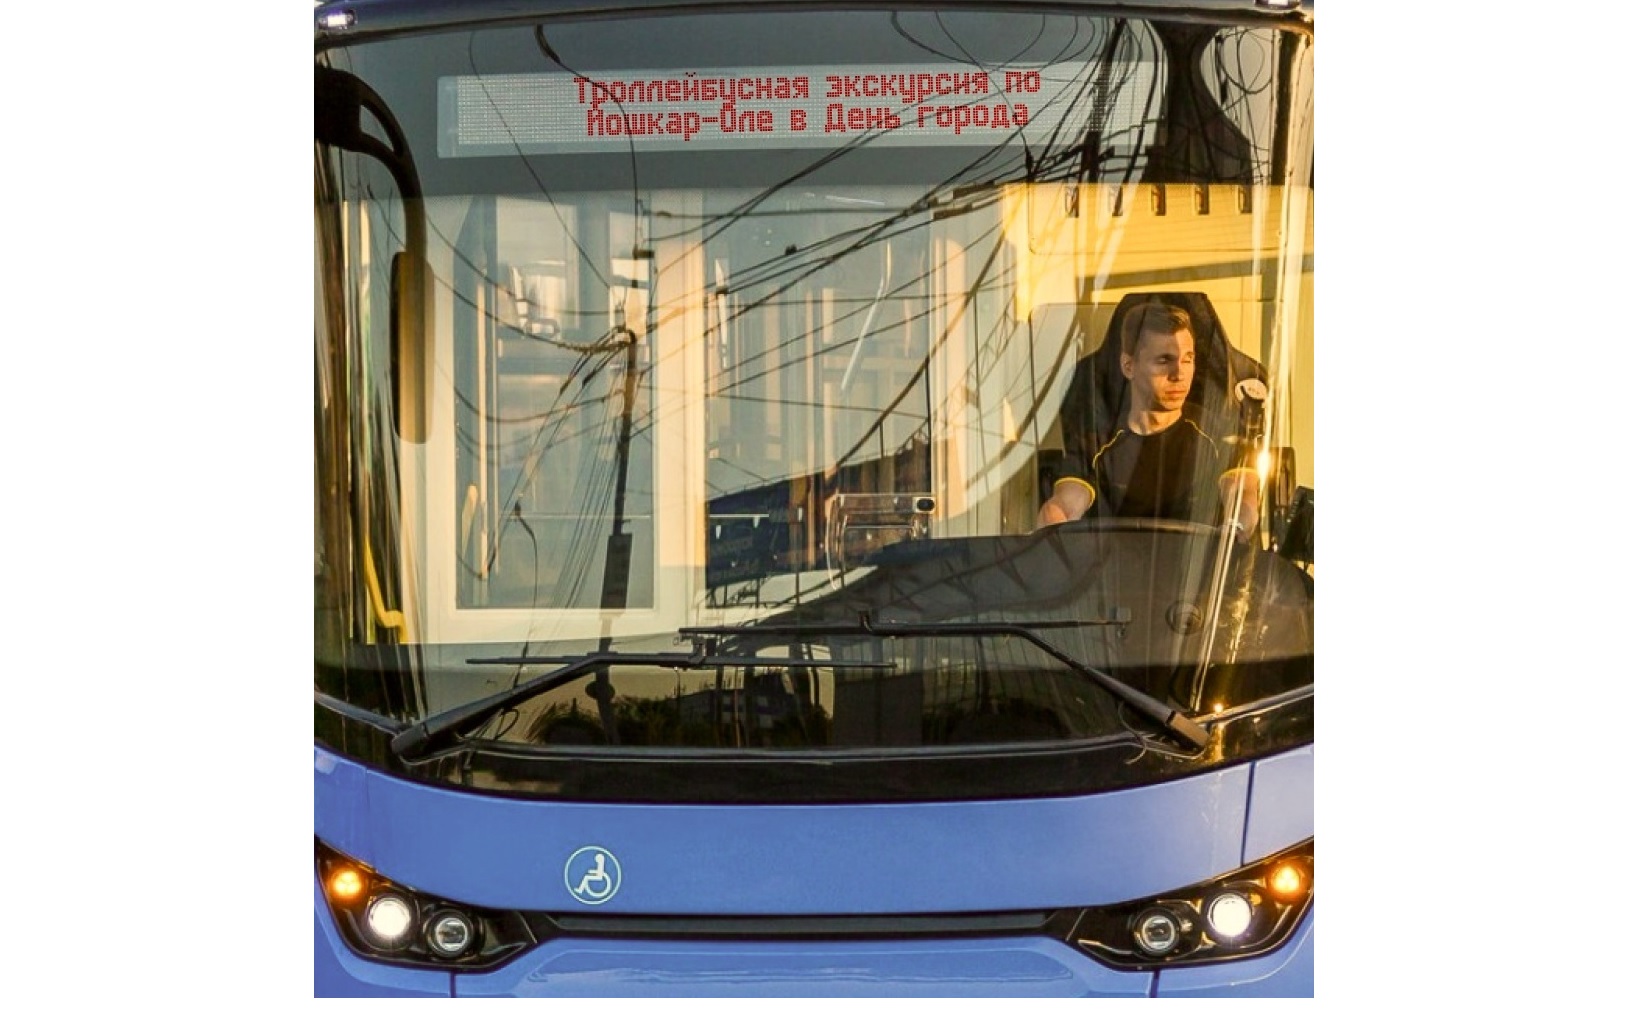 В День города по Йошкар-Оле будет курсировать экскурсионный троллейбус